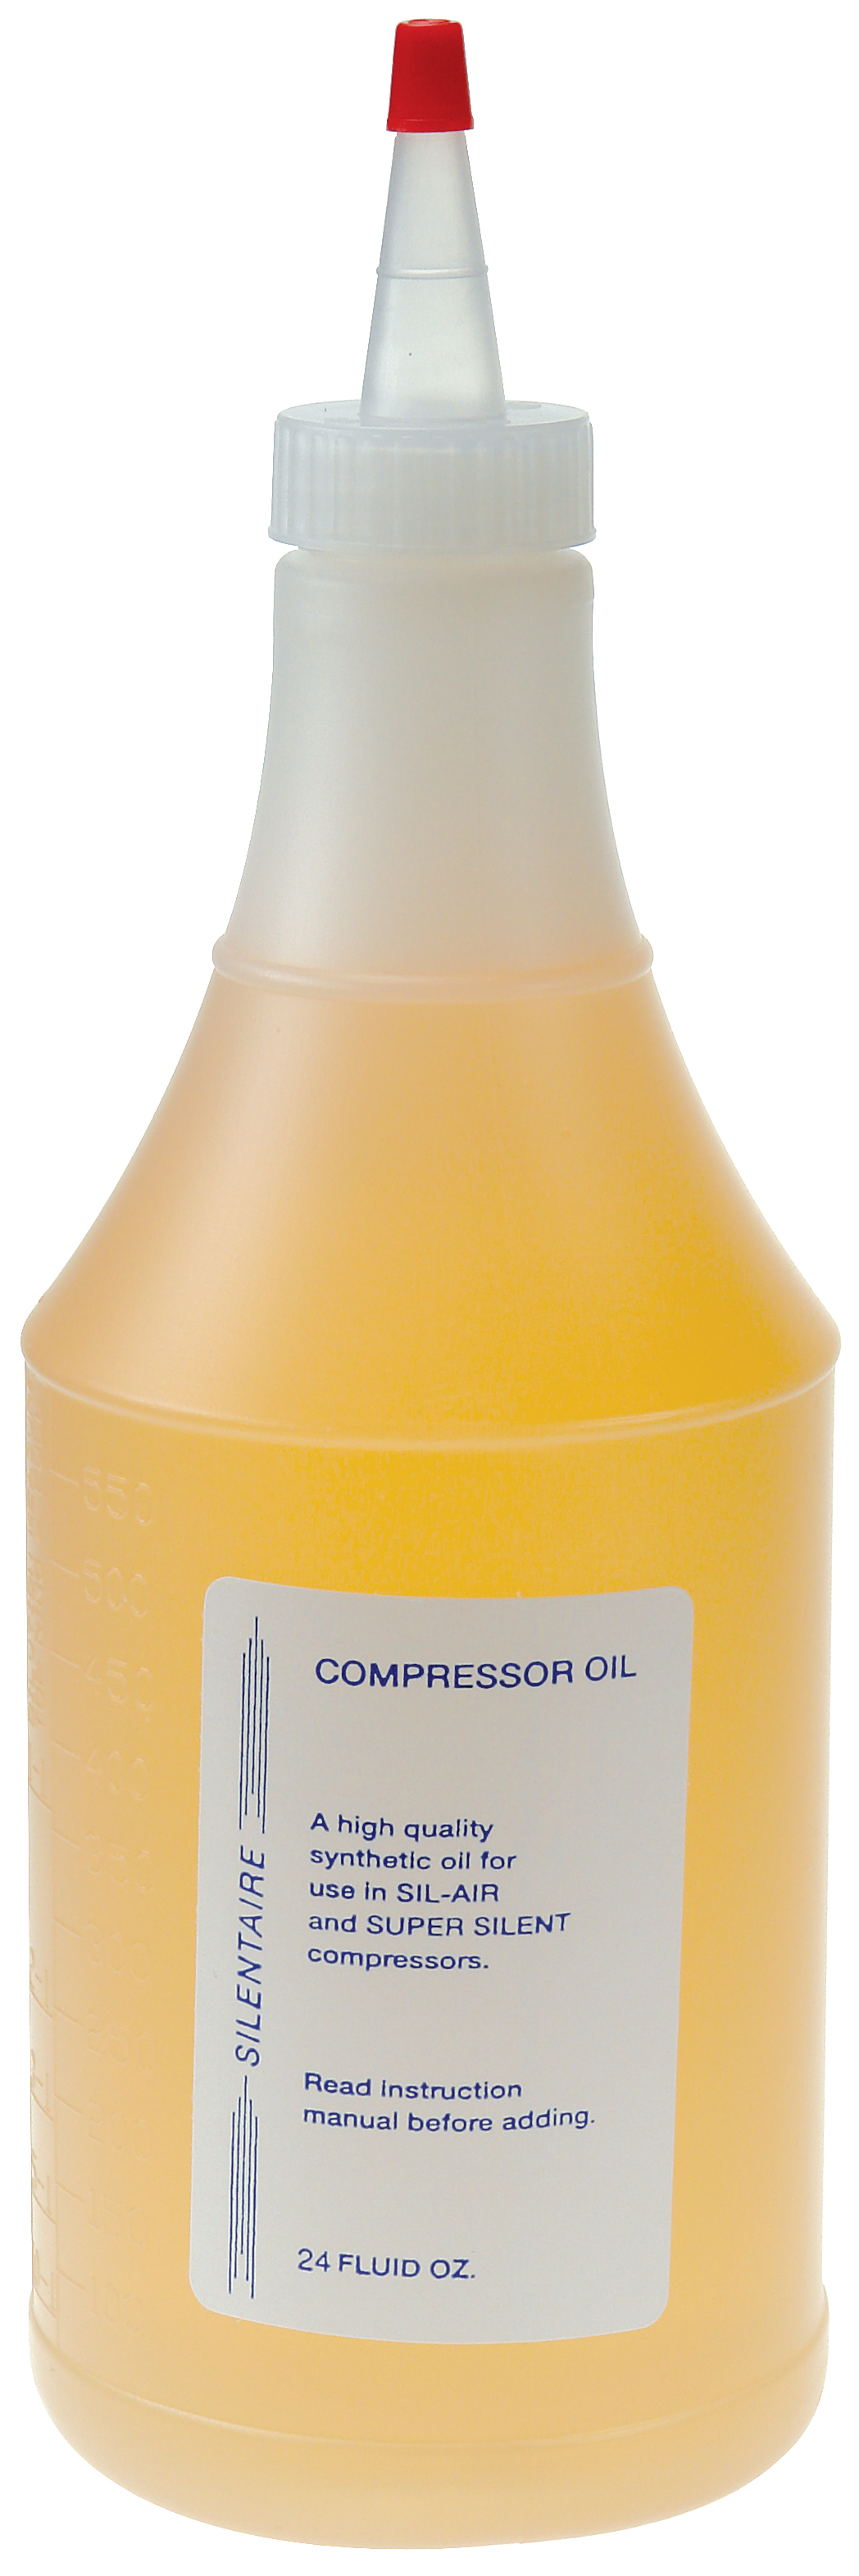 Öl für Silentaire Kompressoren ca. 700ml